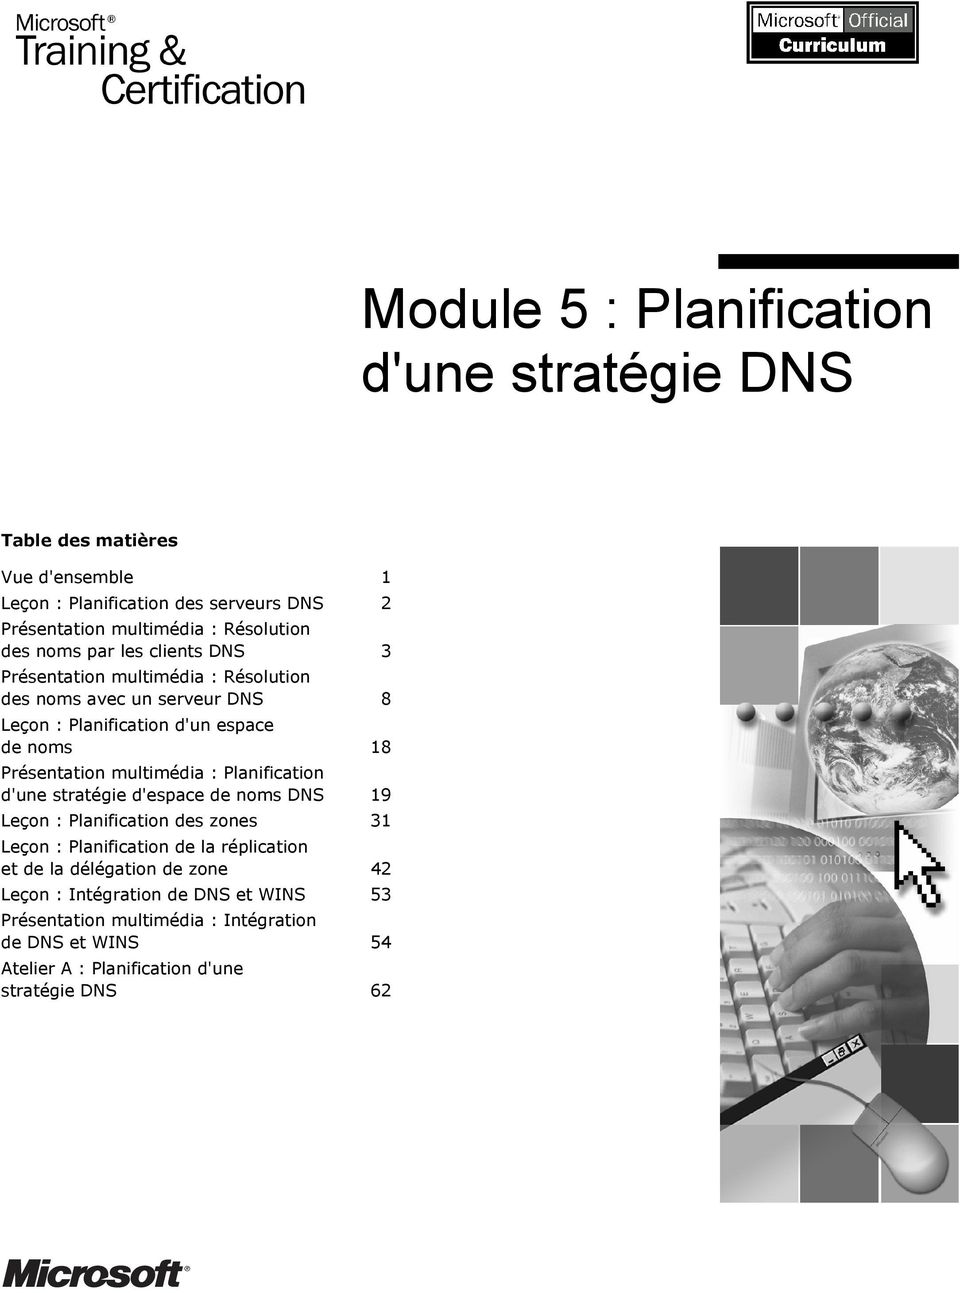 Présentation multimédia : Planification d'une stratégie d'espace de noms DNS 19 Leçon : Planification des zones 31 Leçon : Planification de la réplication et